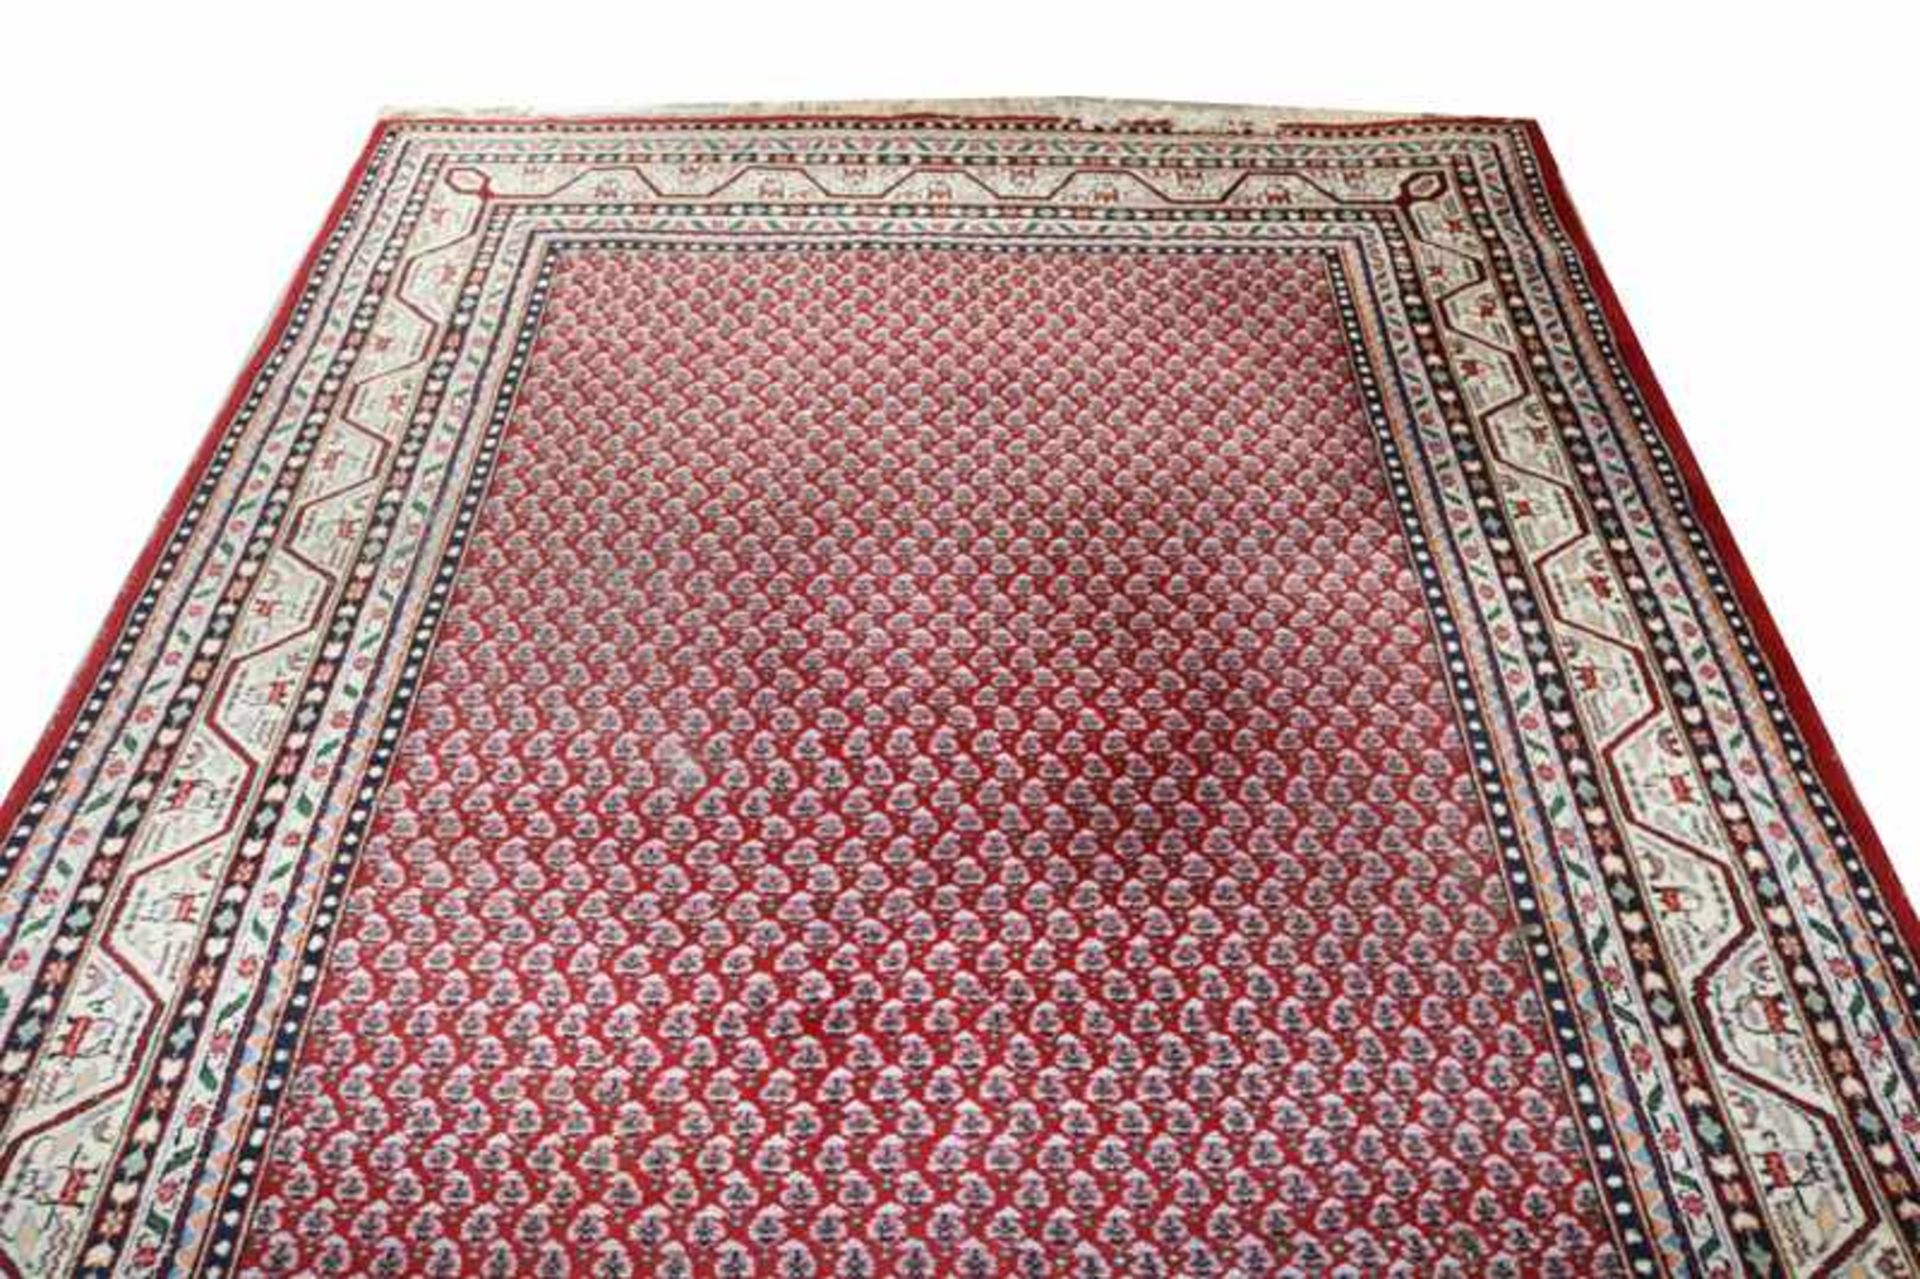 Teppich, Mir, rot/blau/bunt, Gebrauchsspuren, leicht fleckig, 300 cm x 204 cm